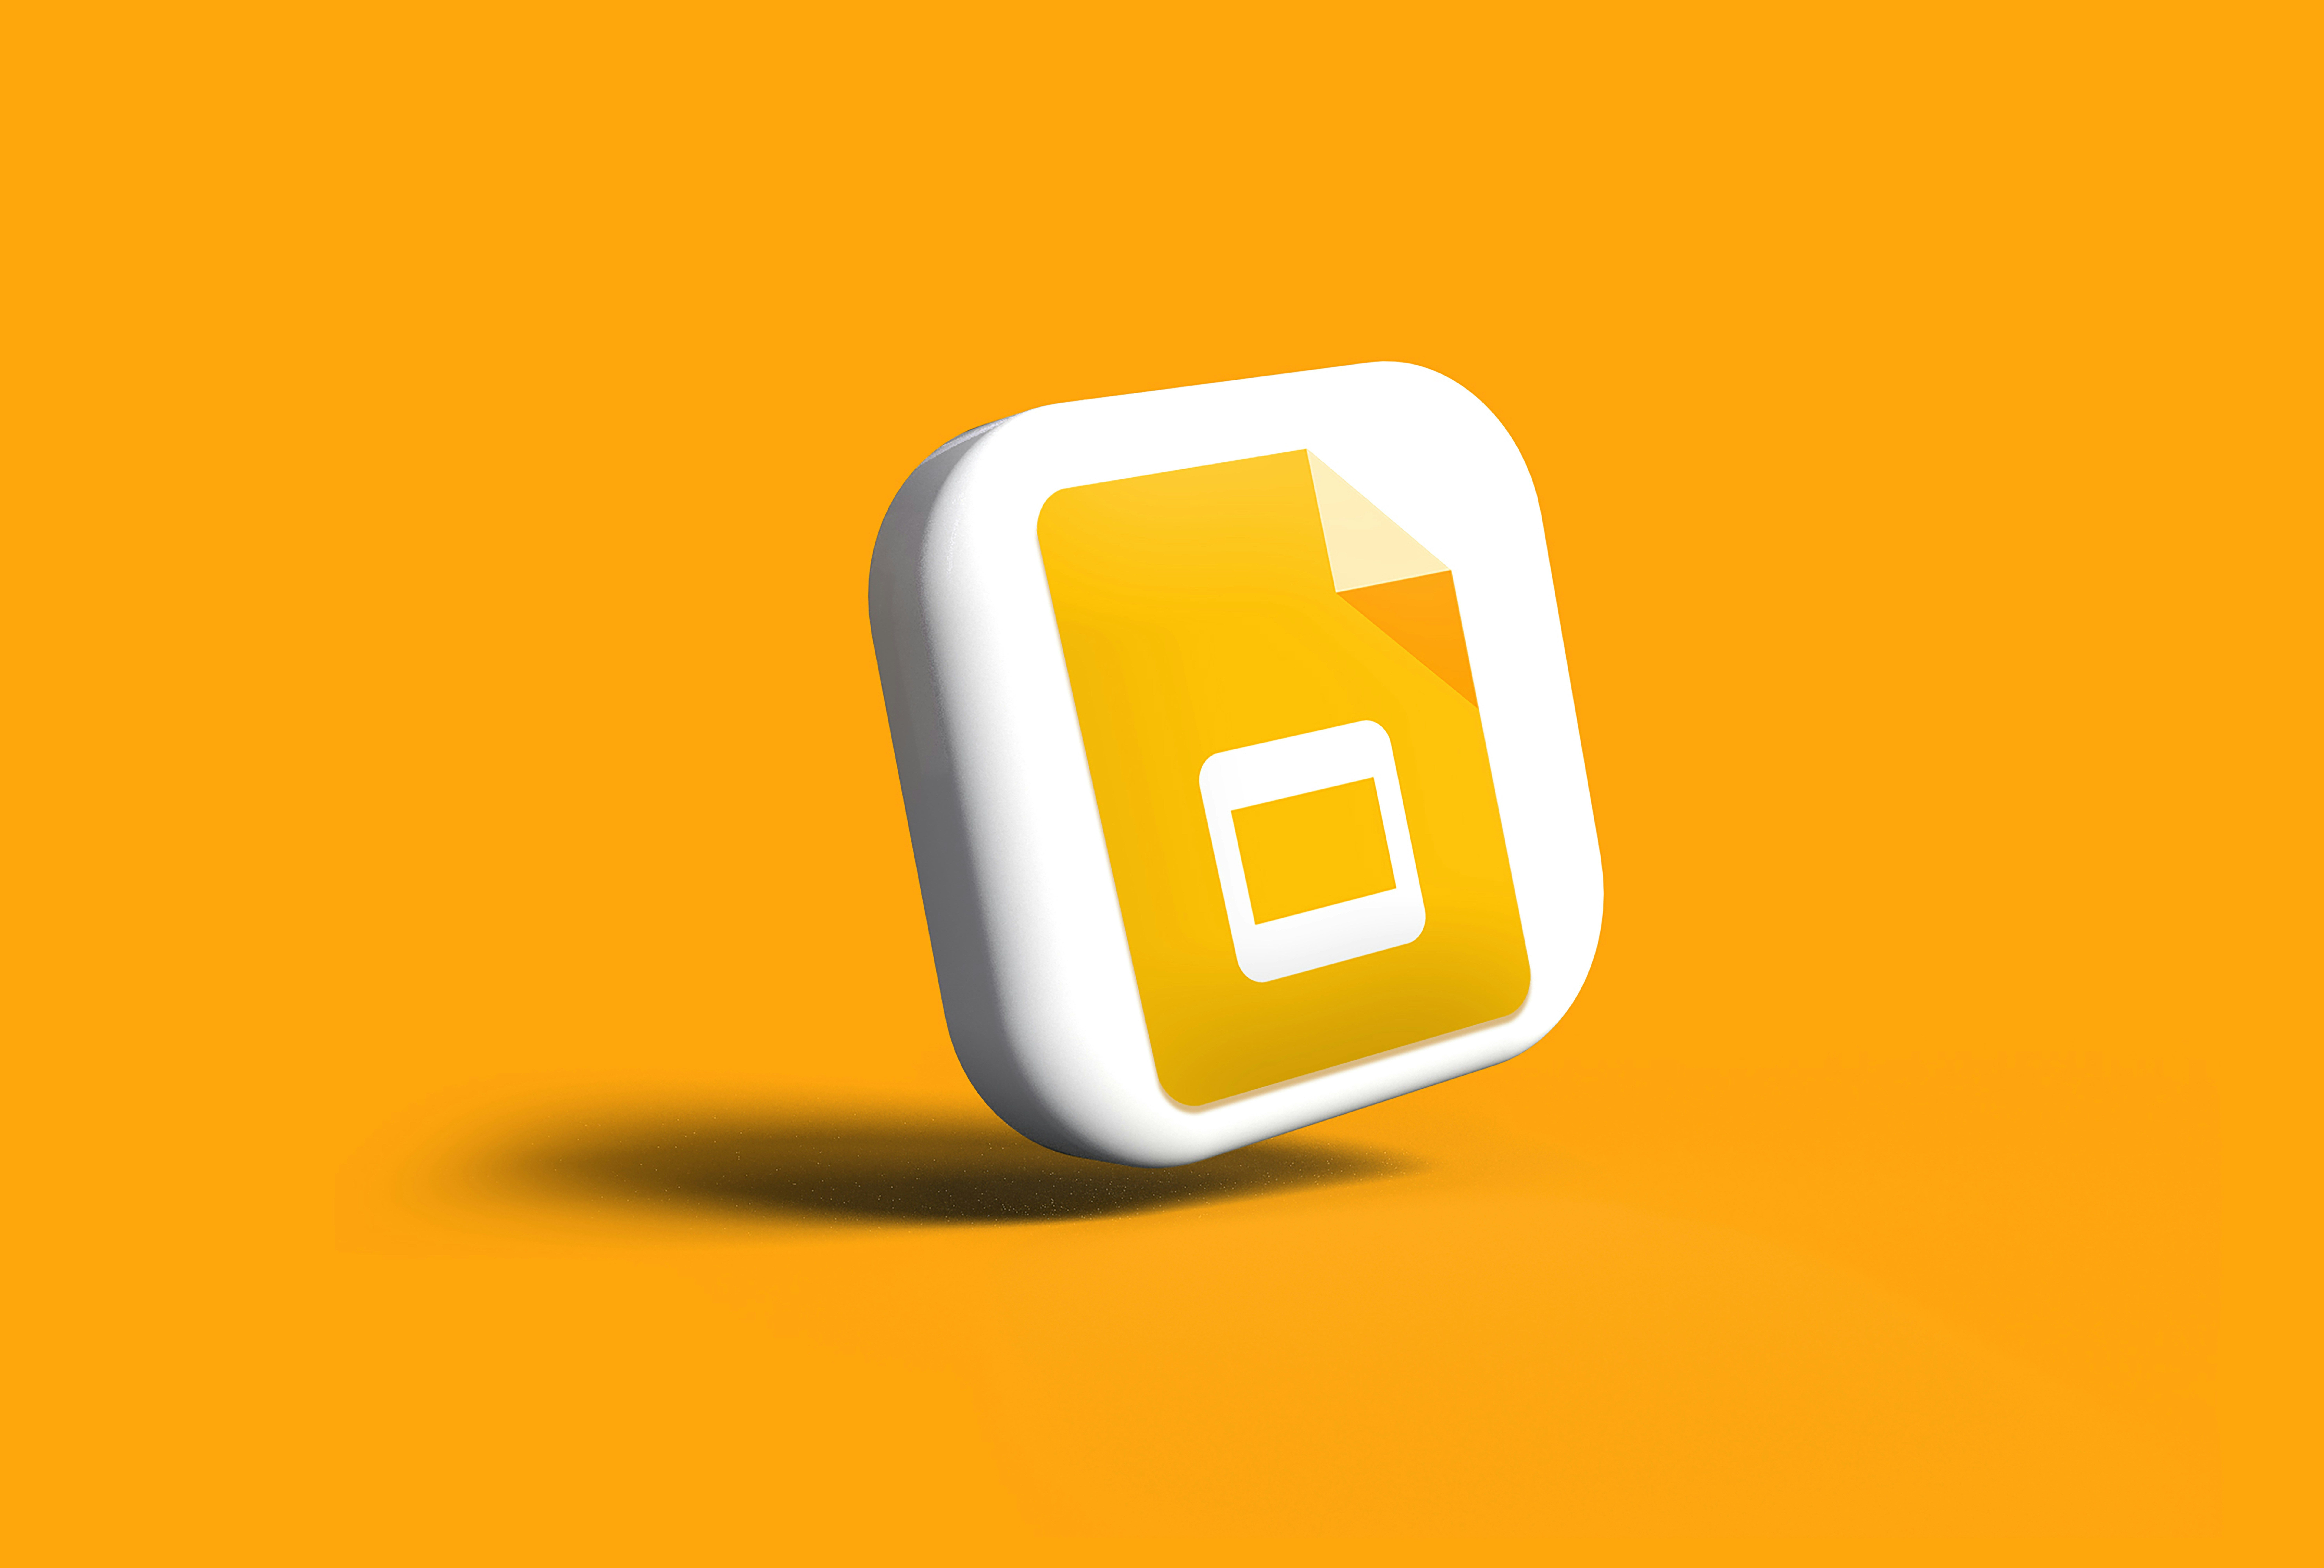 A imagem apresenta um ícone 3D do Apresentações Google contra um fundo laranja.  O ícone está inclinado e projeta uma leve sombra na superfície.